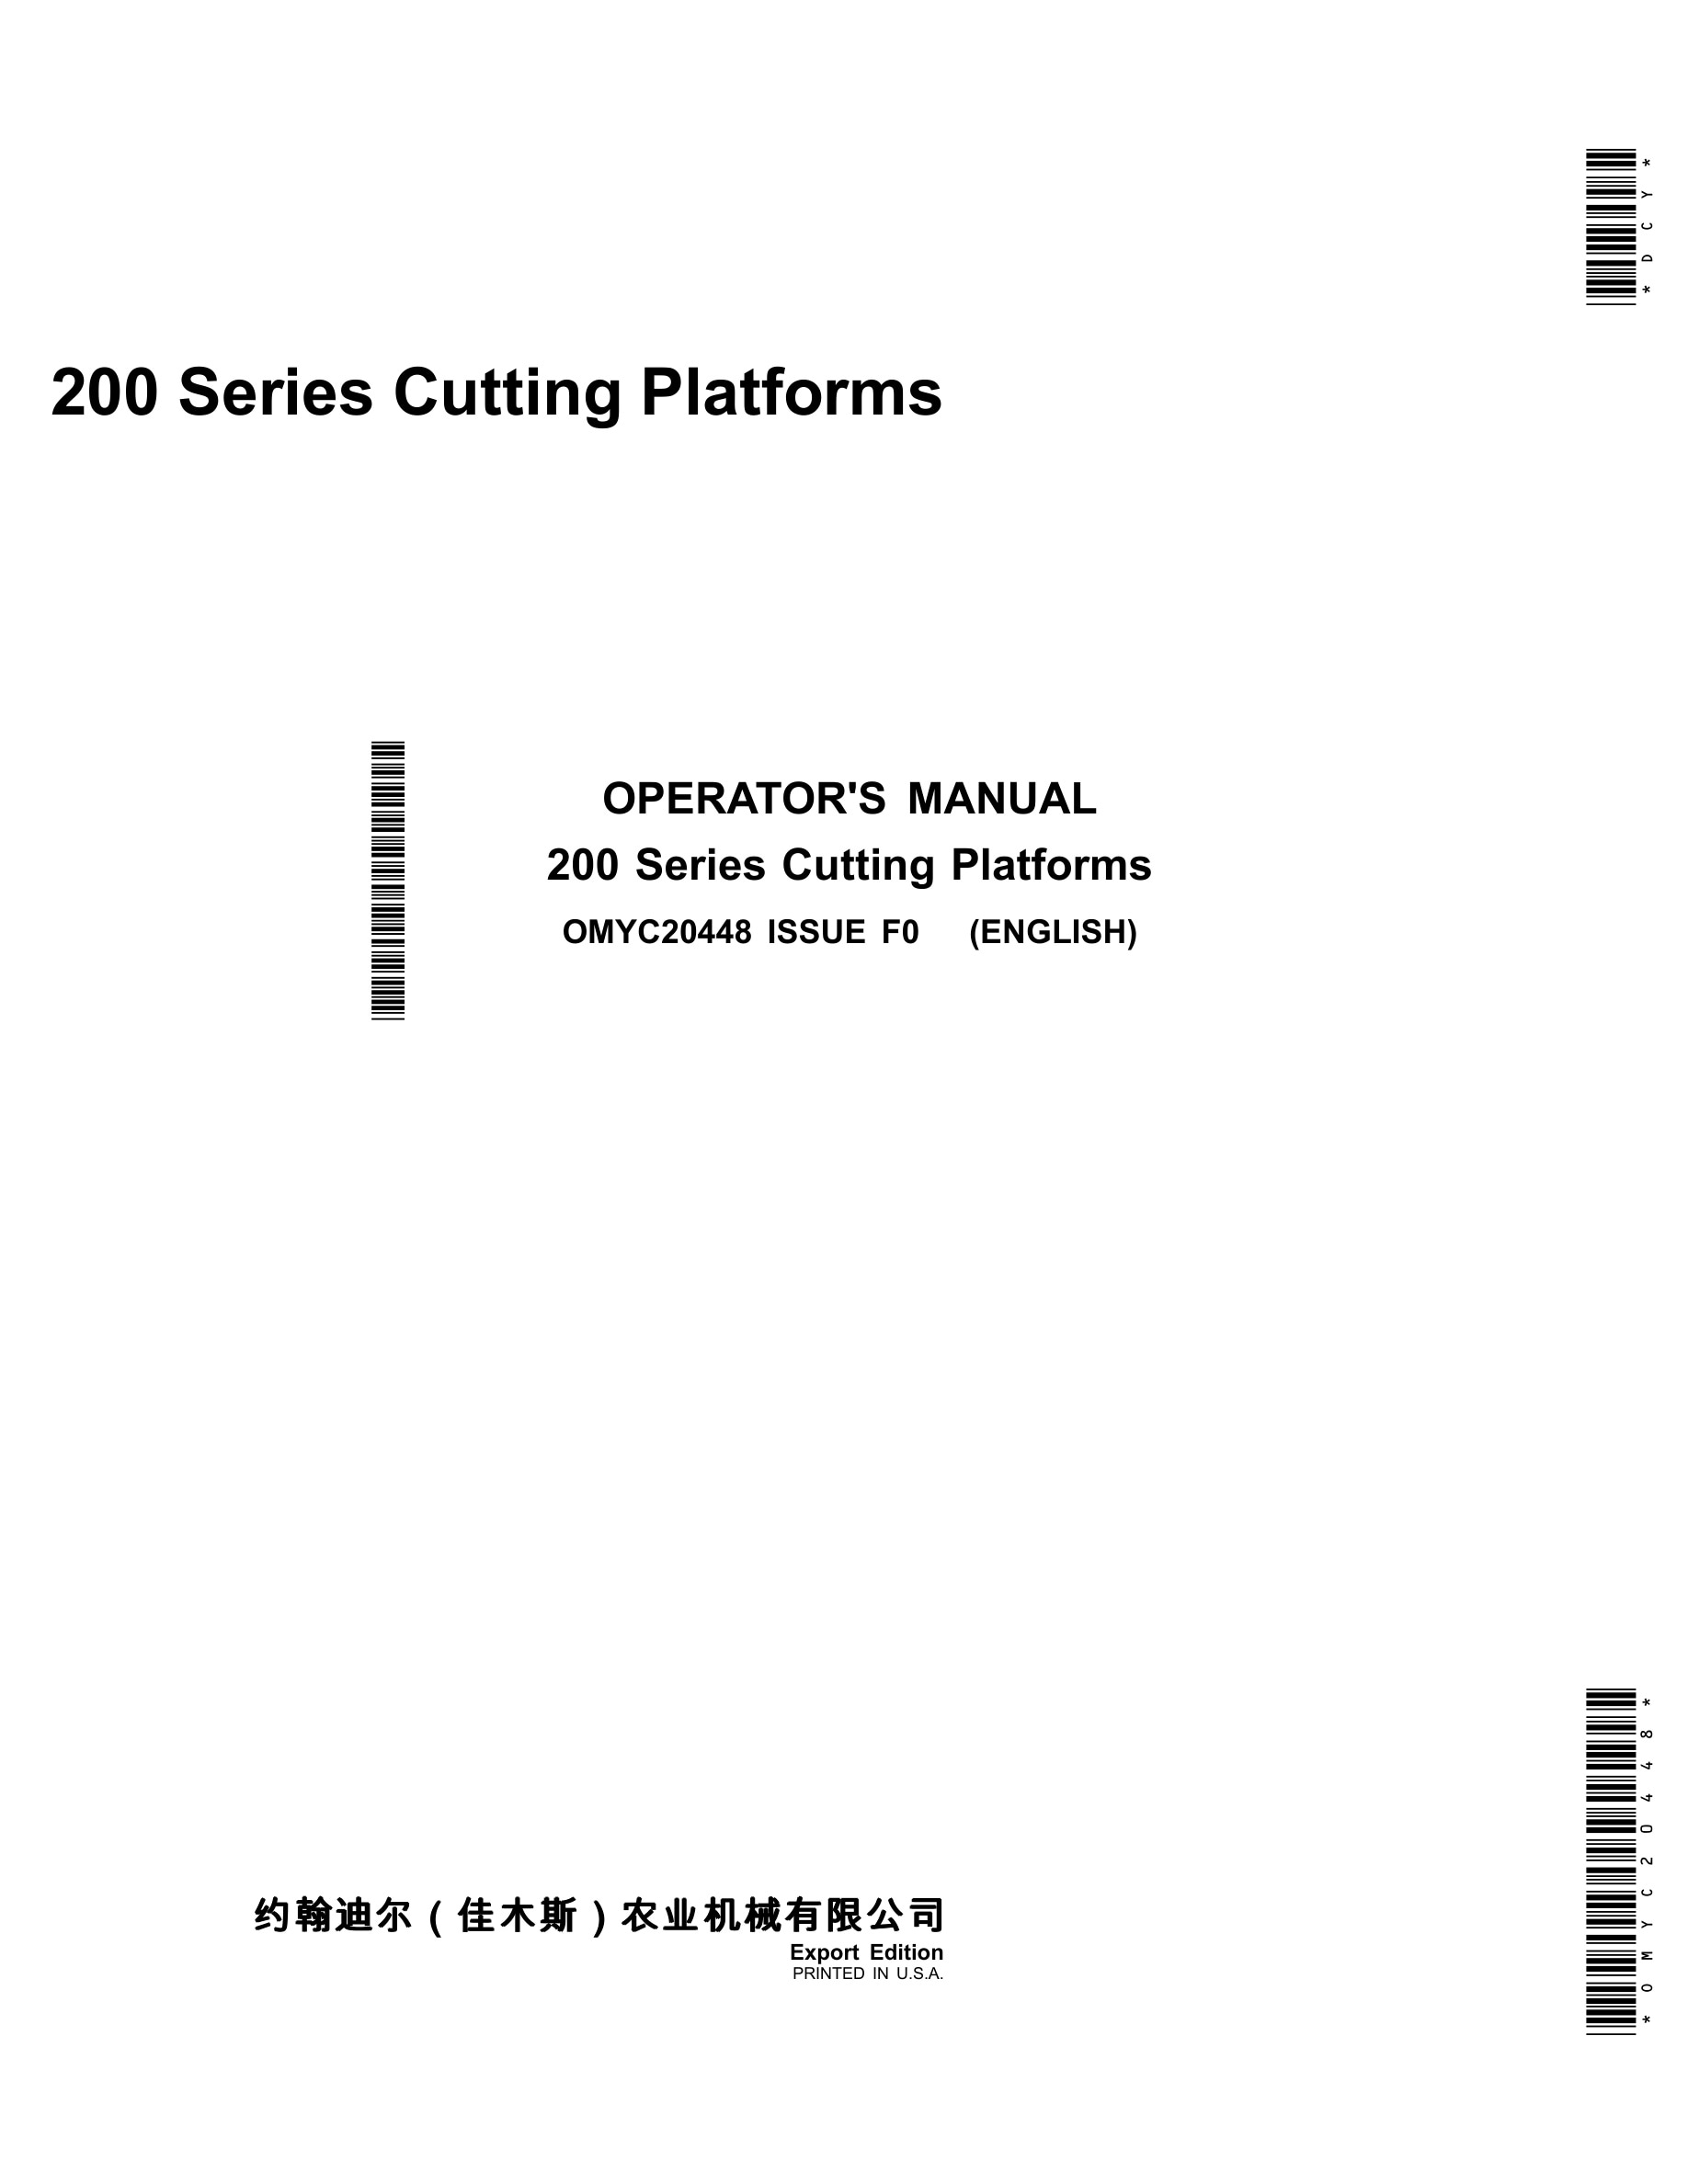 John Deere 200 Series Cutting Platforms Operator Manual OMYC20448-1